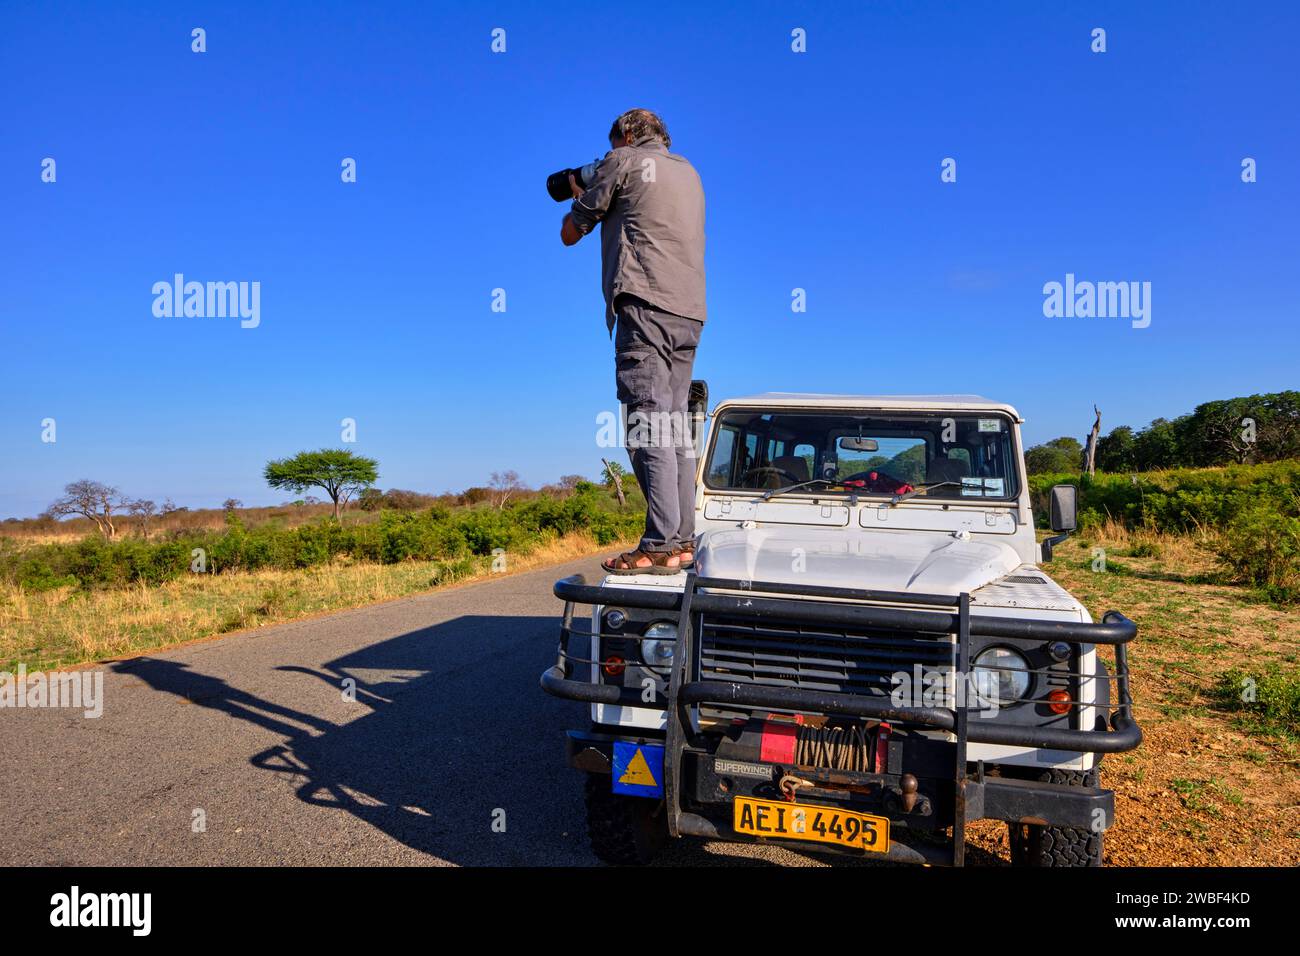 Simbabwe, Matabeleland North, Provinz, Hwange Nationalpark, wilde afrikanische Elefanten (Loxodonta africana), Pirschfahrt im Geländewagen Stockfoto